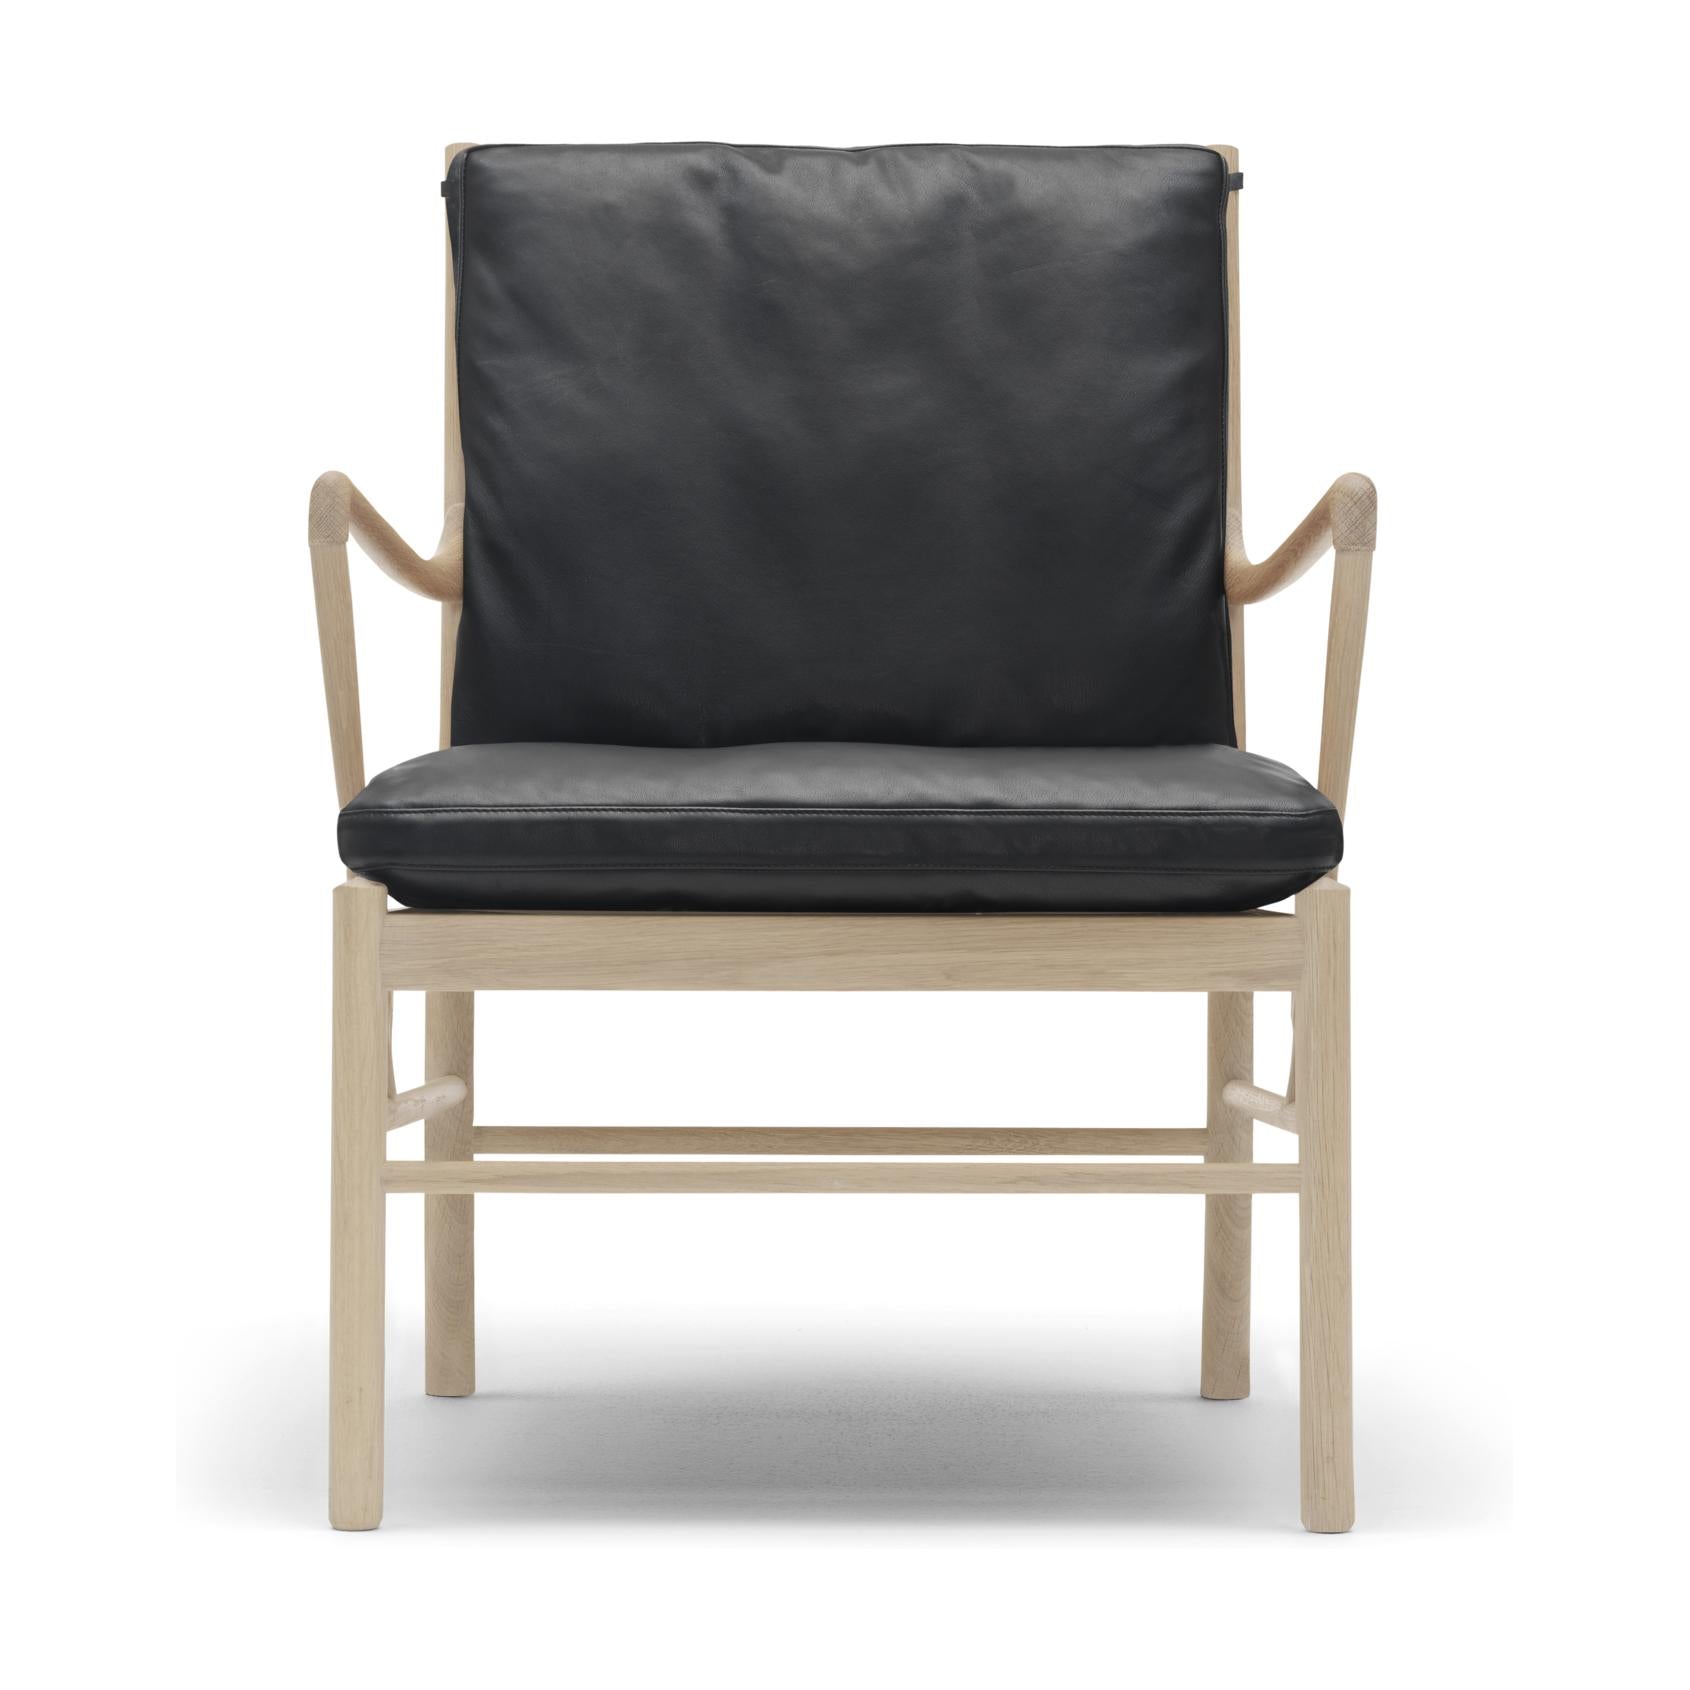 Carl Hansen Ow149 Chaise coloniale, chêne huilé blanc/cuir noir